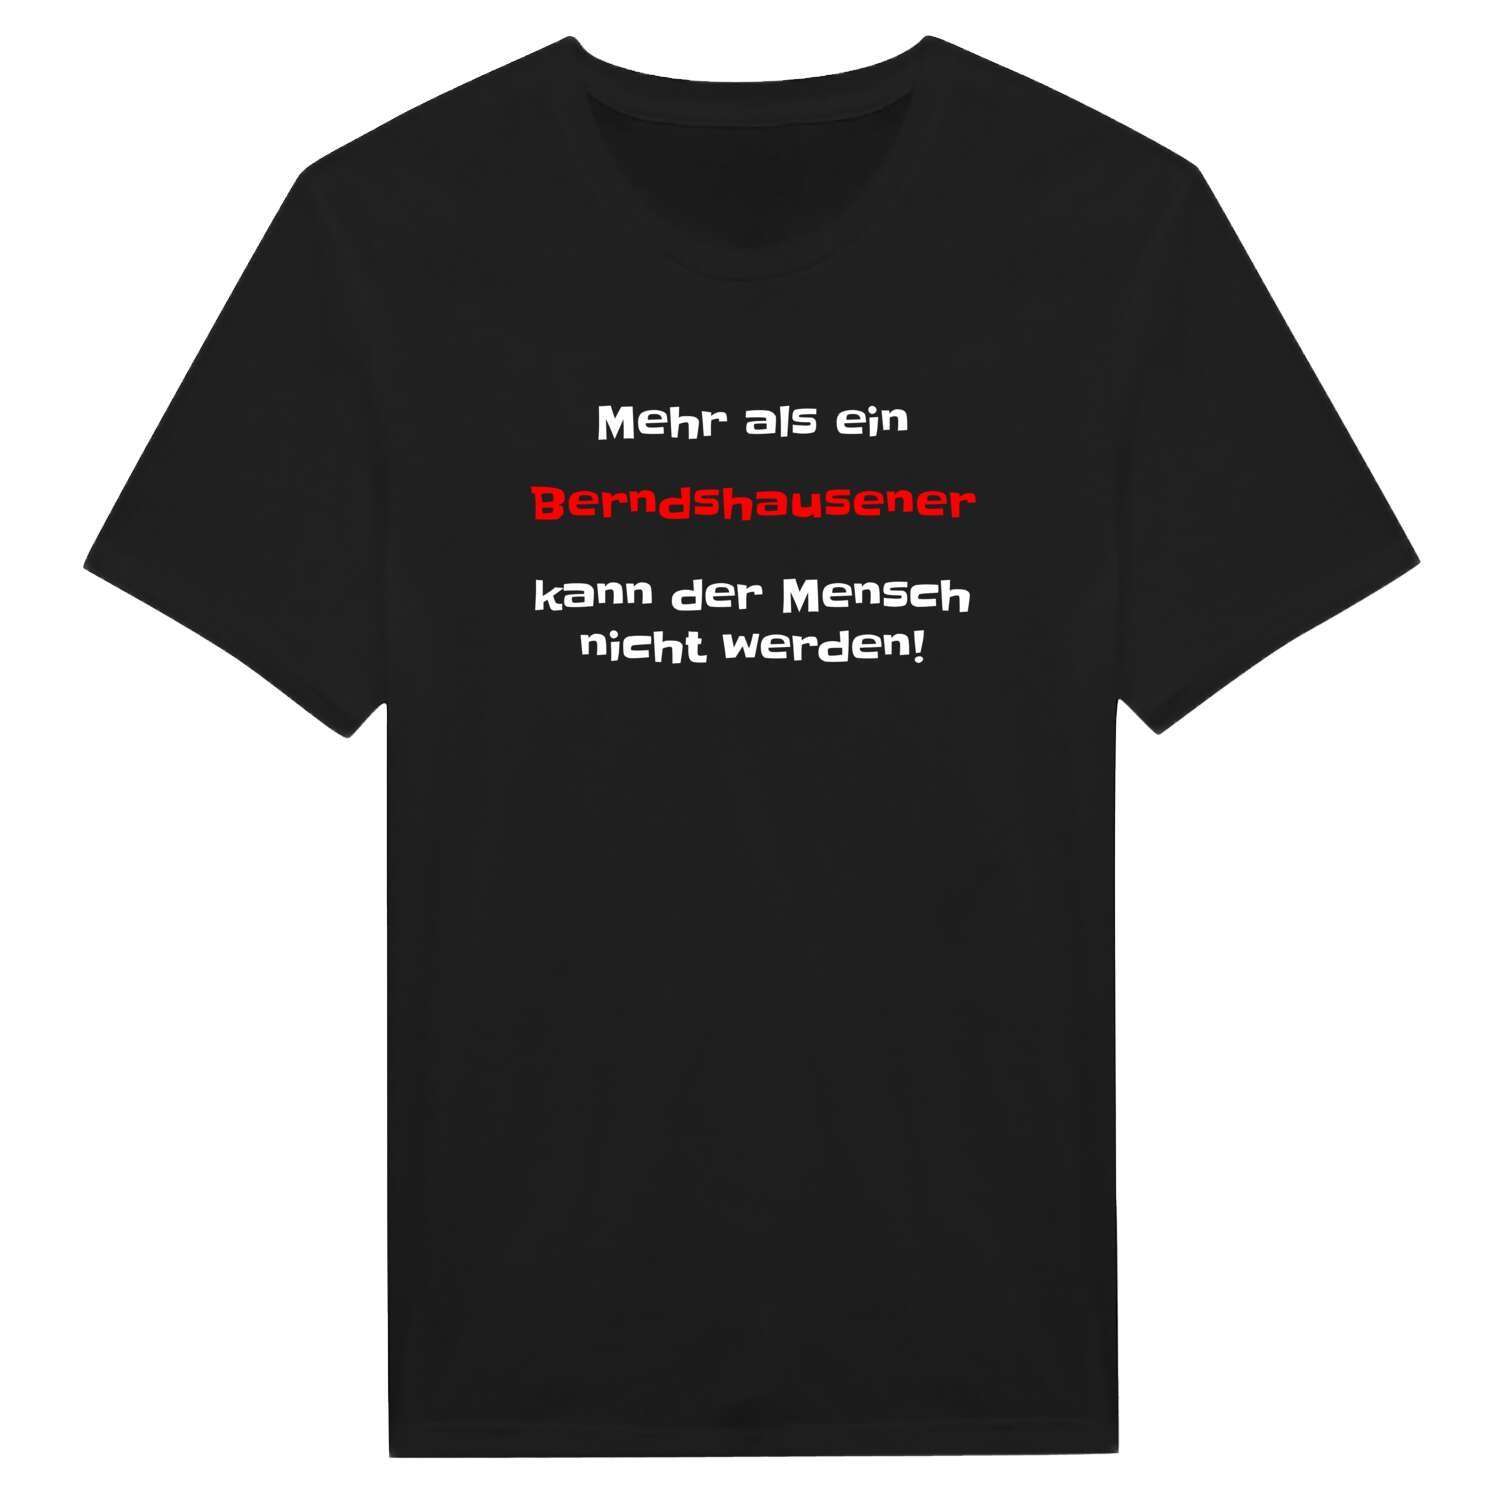 Berndshausen T-Shirt »Mehr als ein«